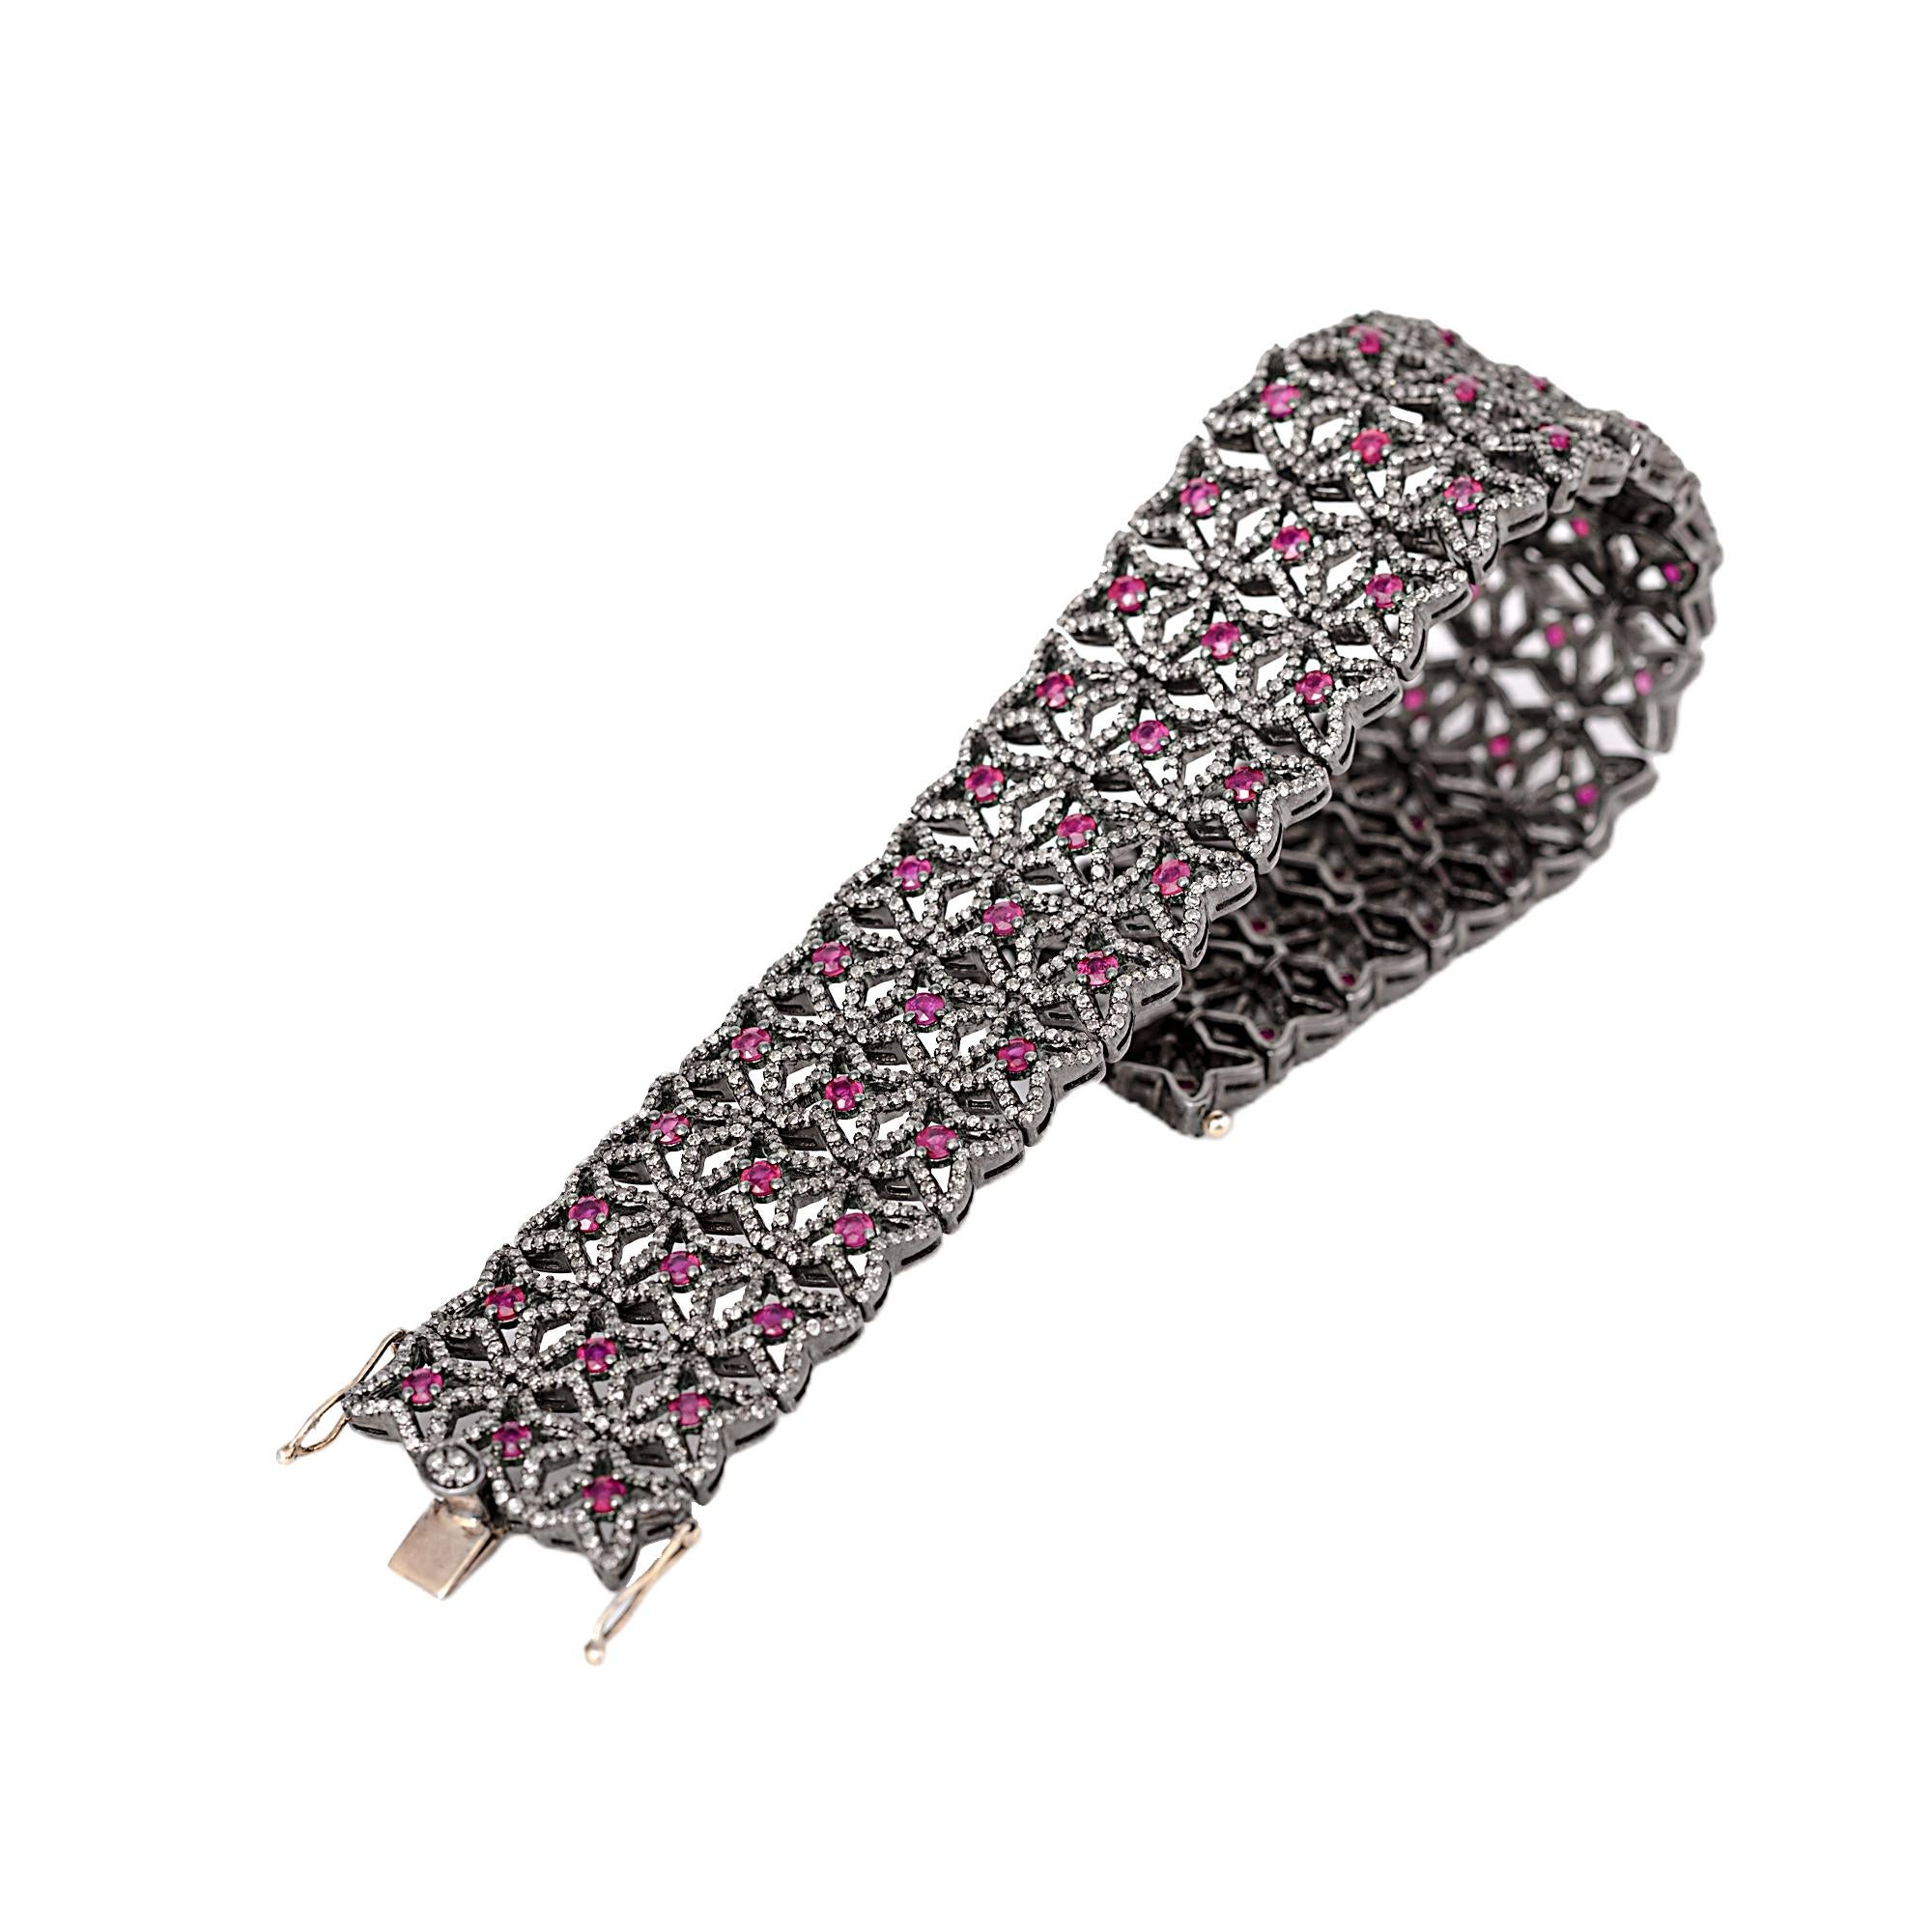 8.bracelet rétro de style vintage avec diamants et rubis de 63 carats

Ce bracelet en forme d'étoile en rubis rouge ardent et diamants, de style art-déco et d'époque victorienne, est impressionnant. L'étoile ouverte/creuse est formée de diamants